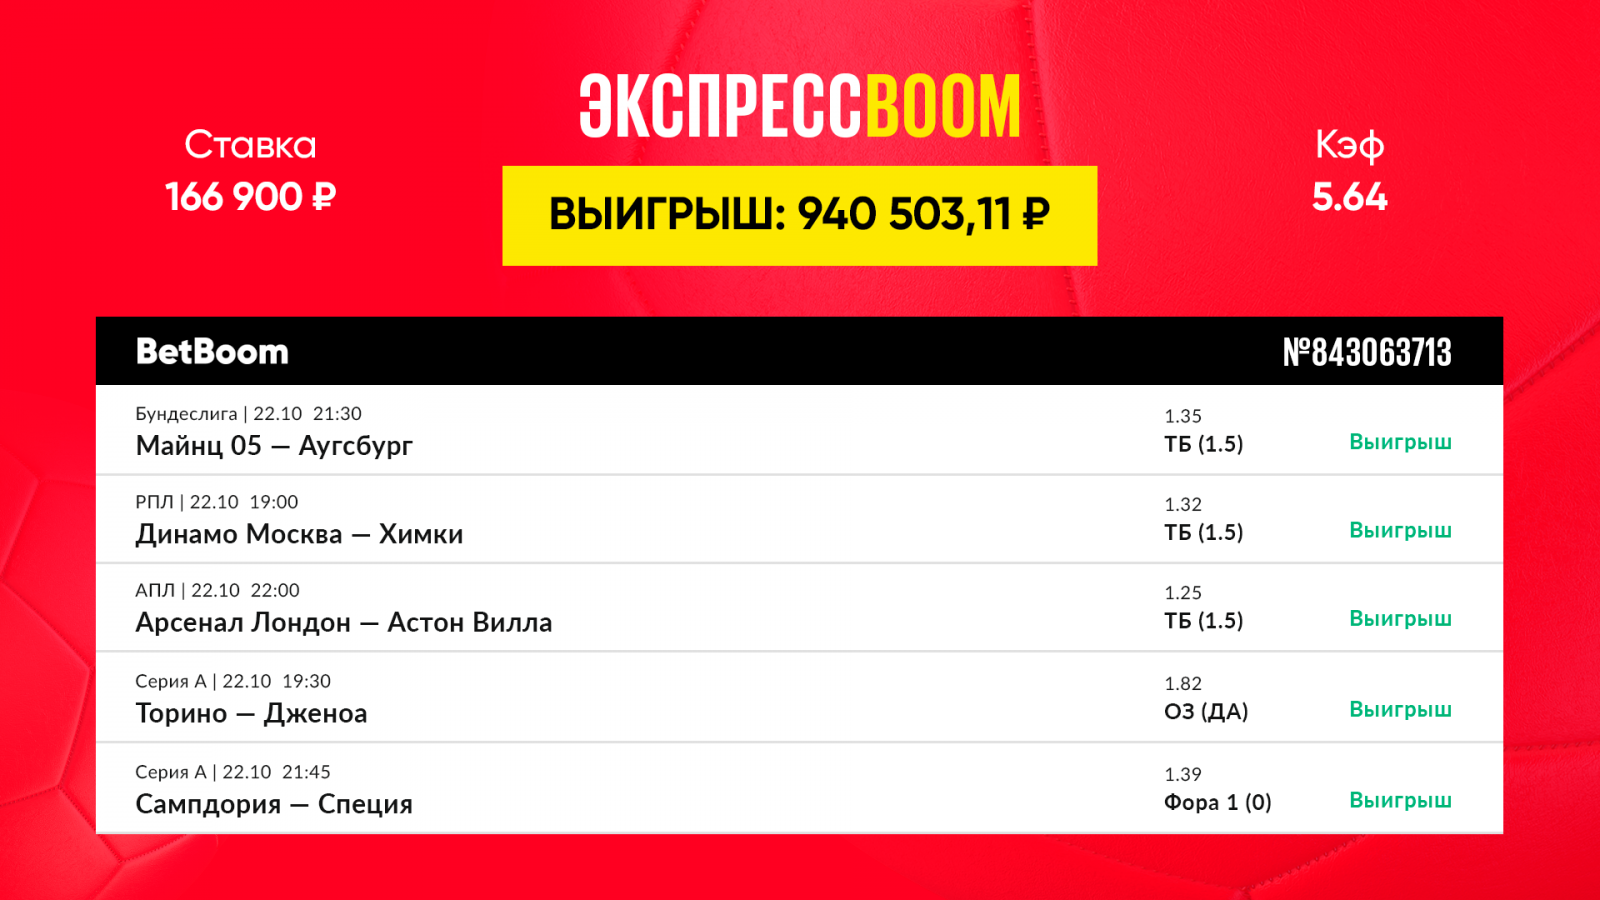 Футбольный экспресс принес клиенту BetBoom почти один миллион рублей!